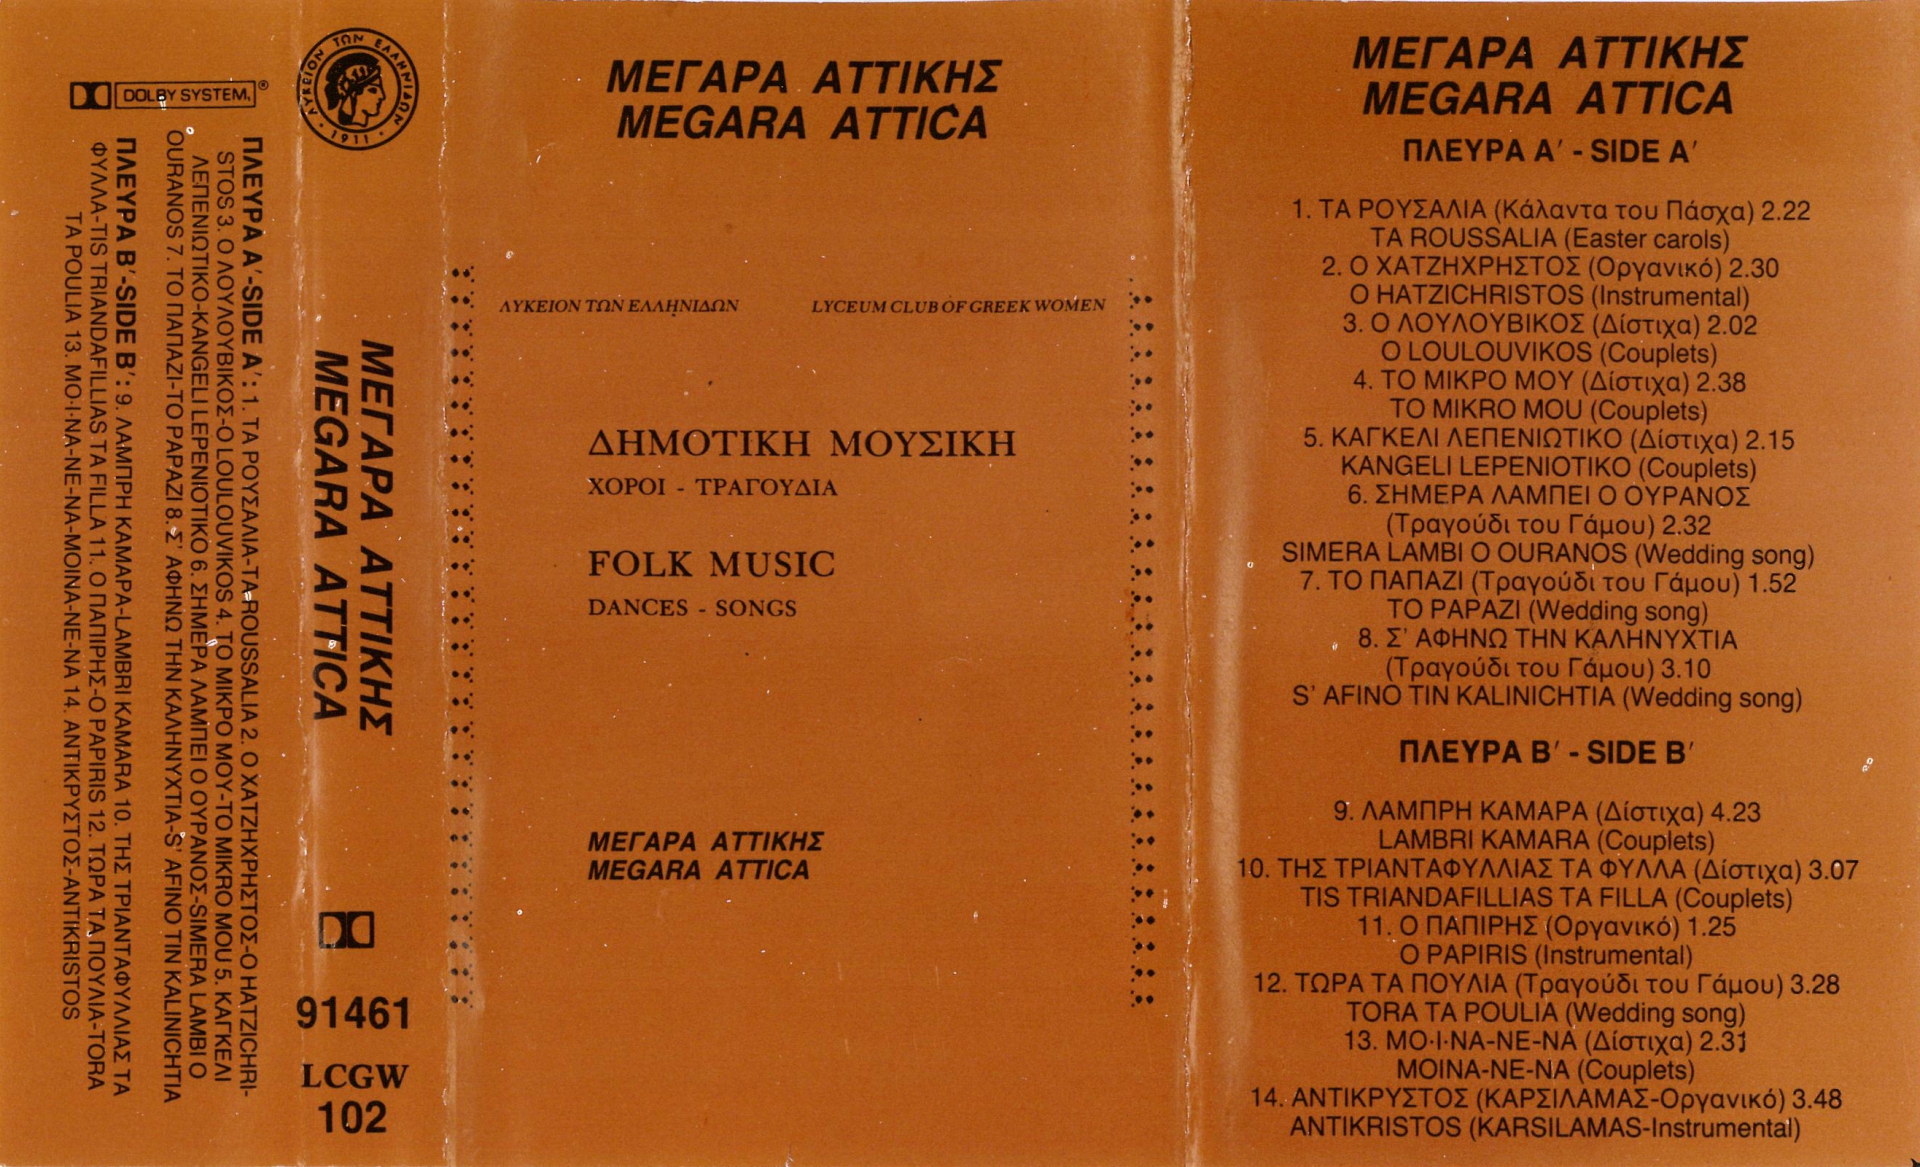 Δημοτική Μουσική, Χοροί - Τραγούδια, Μέγαρα Αττικής | Λύκειον των Ελληνίδων